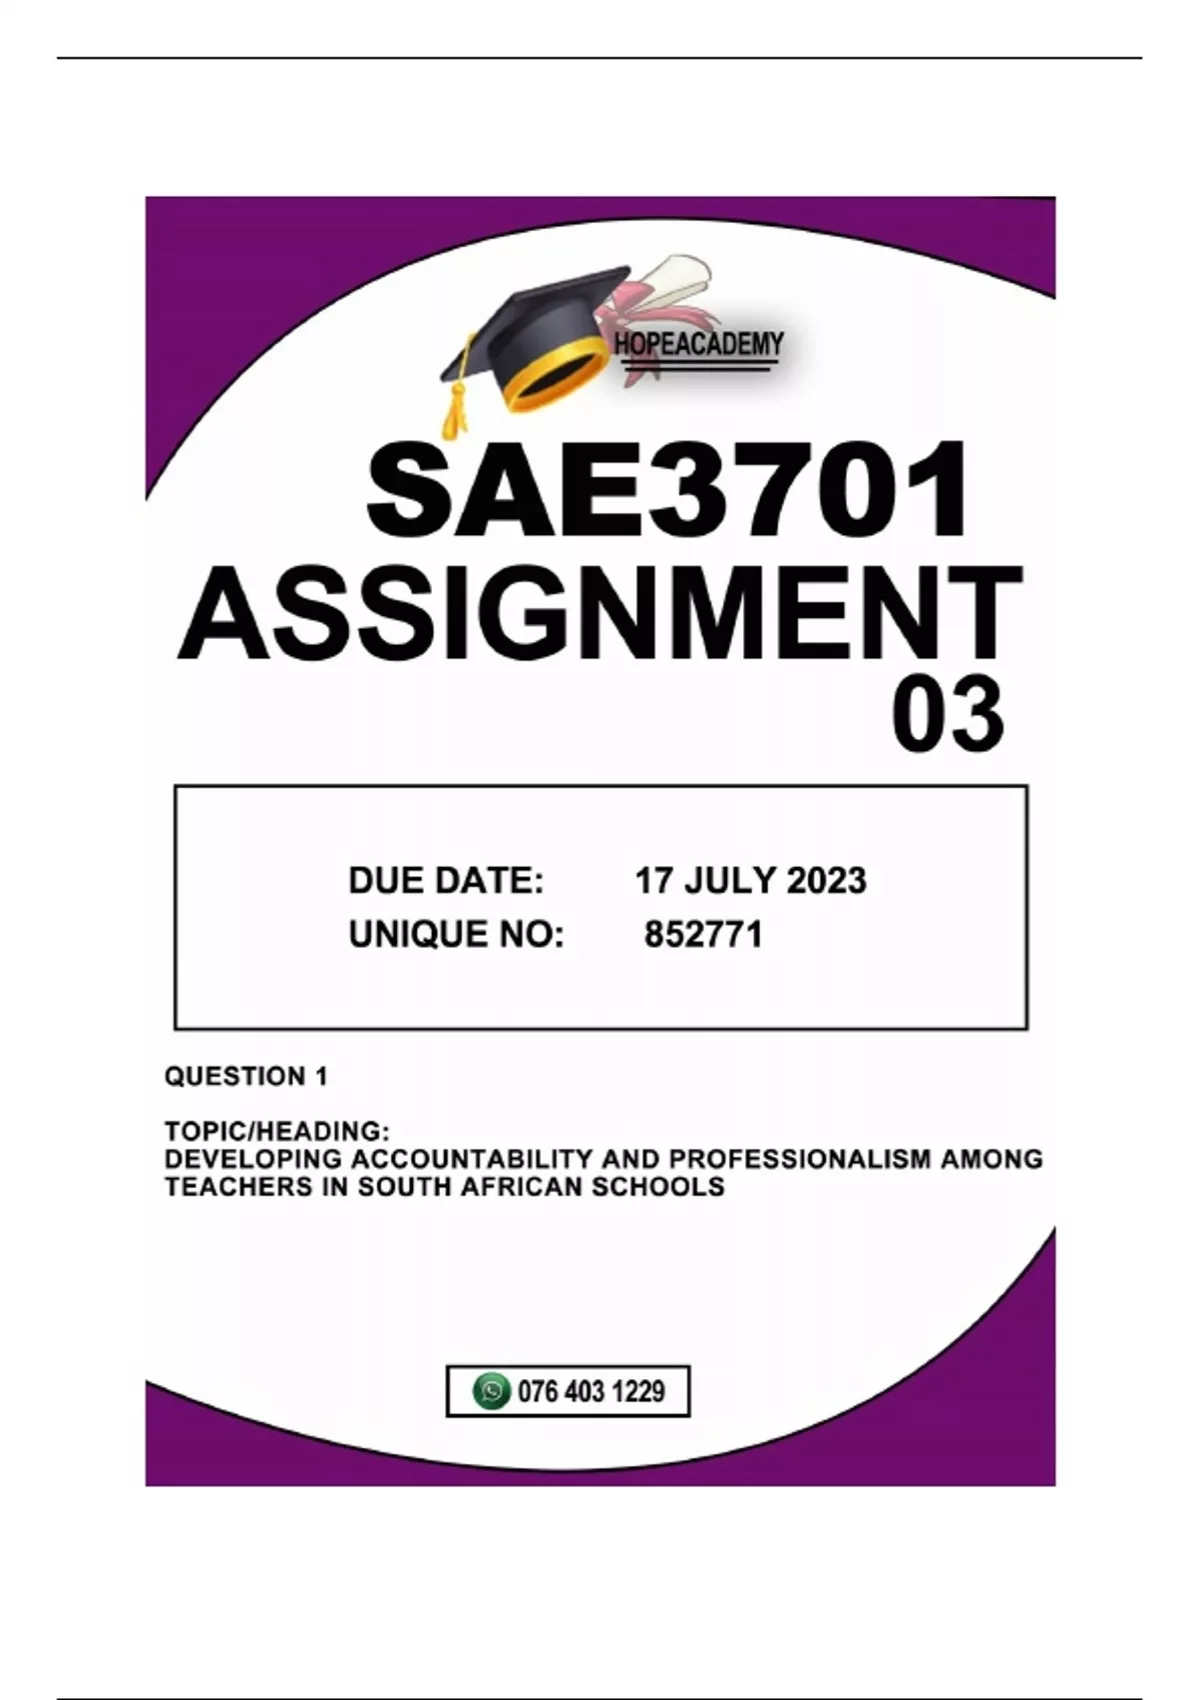 sae3701 assignment 3 memorandum 2022